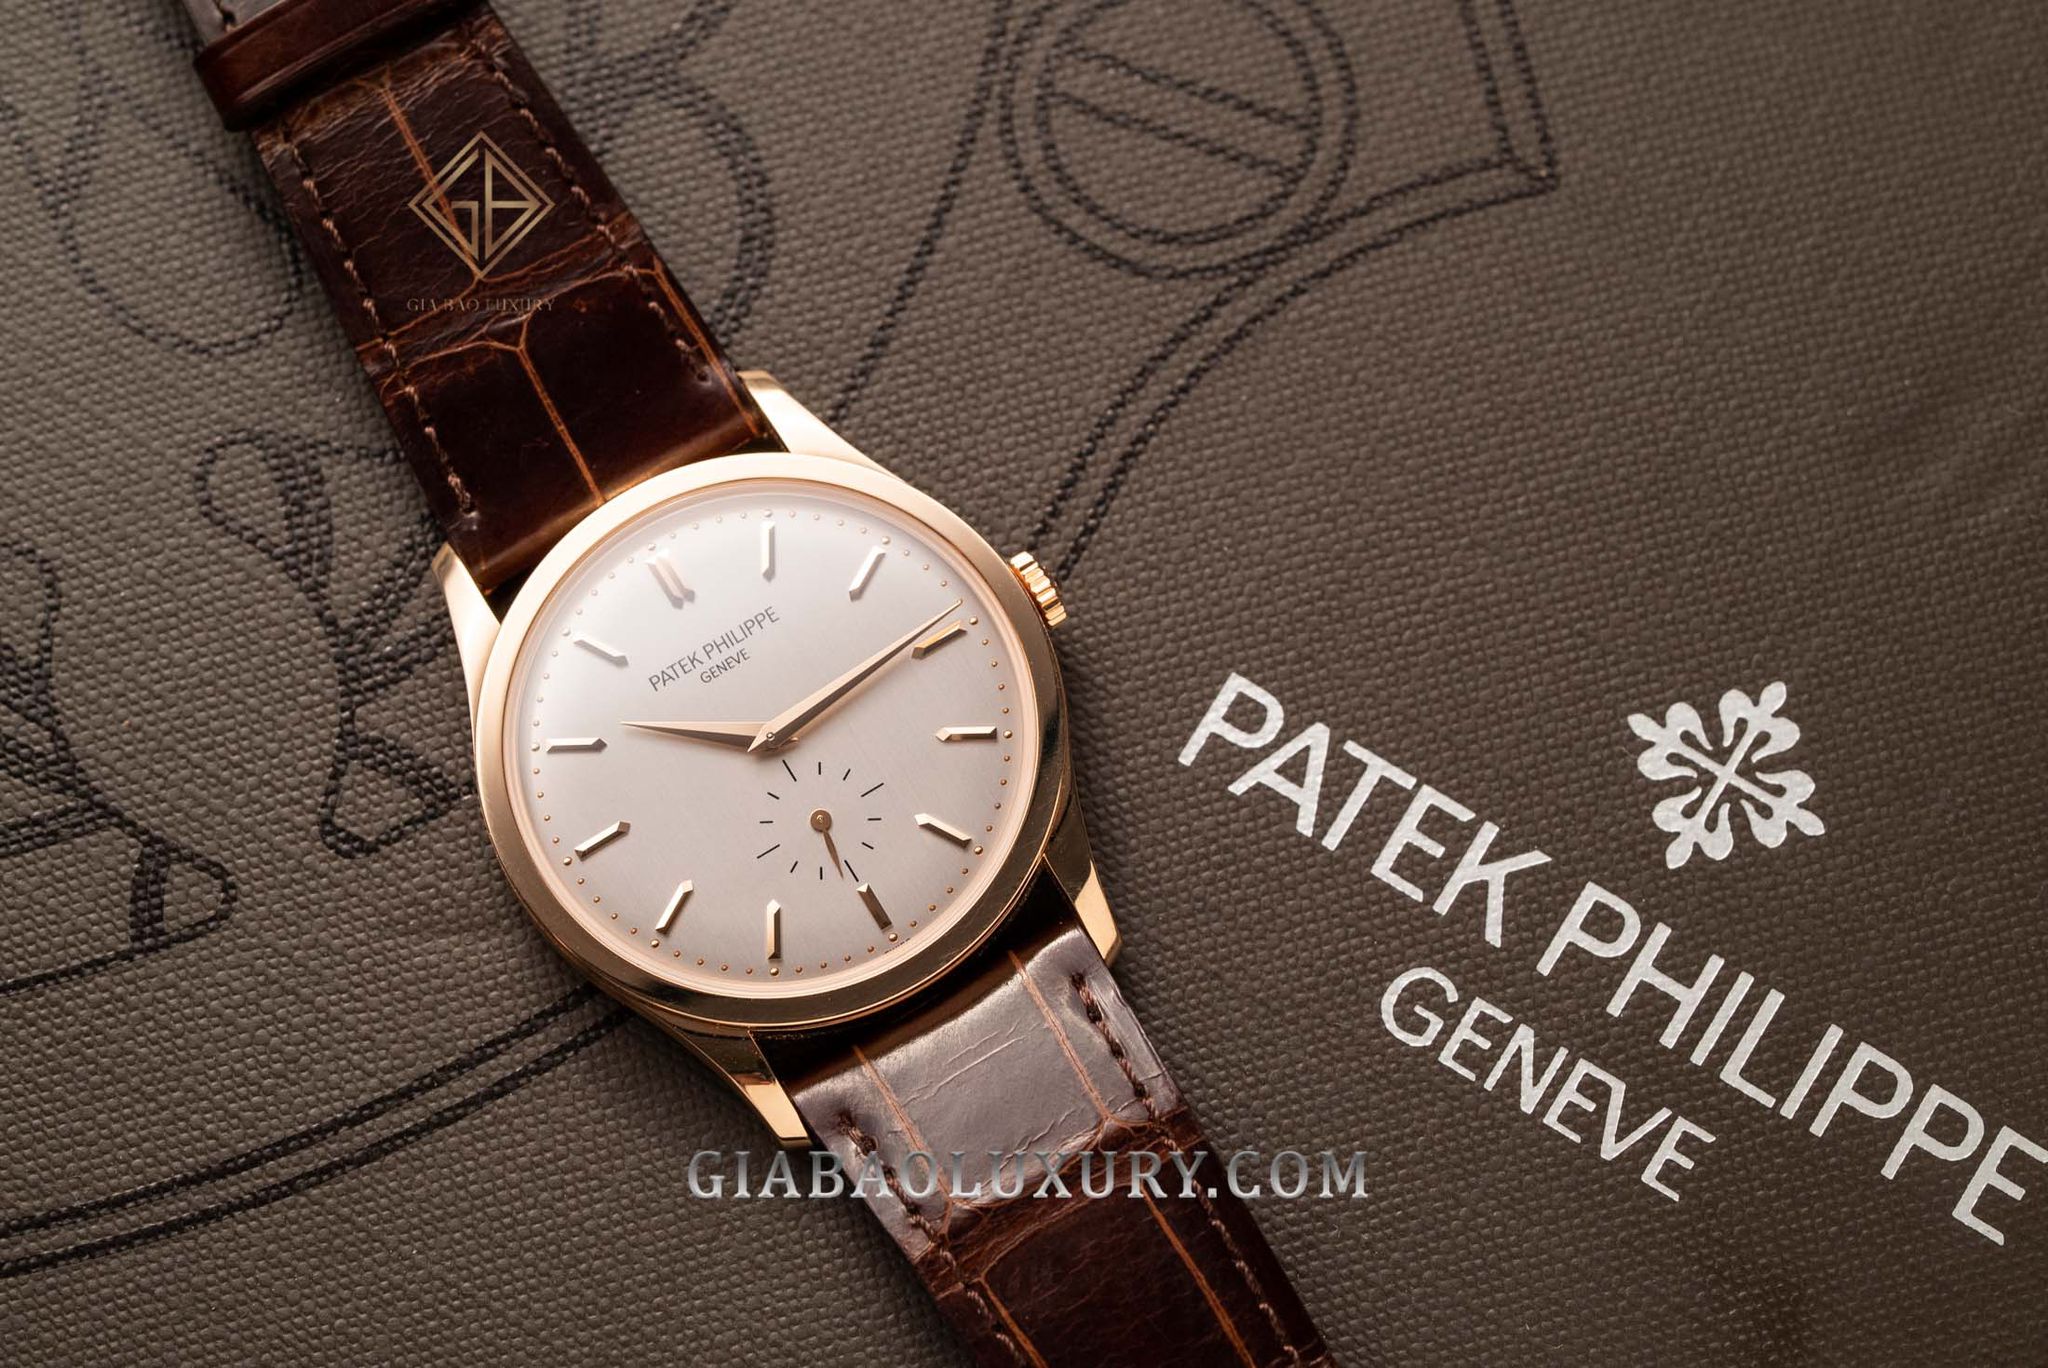 Thu mua đồng hồ Patek Philippe Calatrava chính hãng